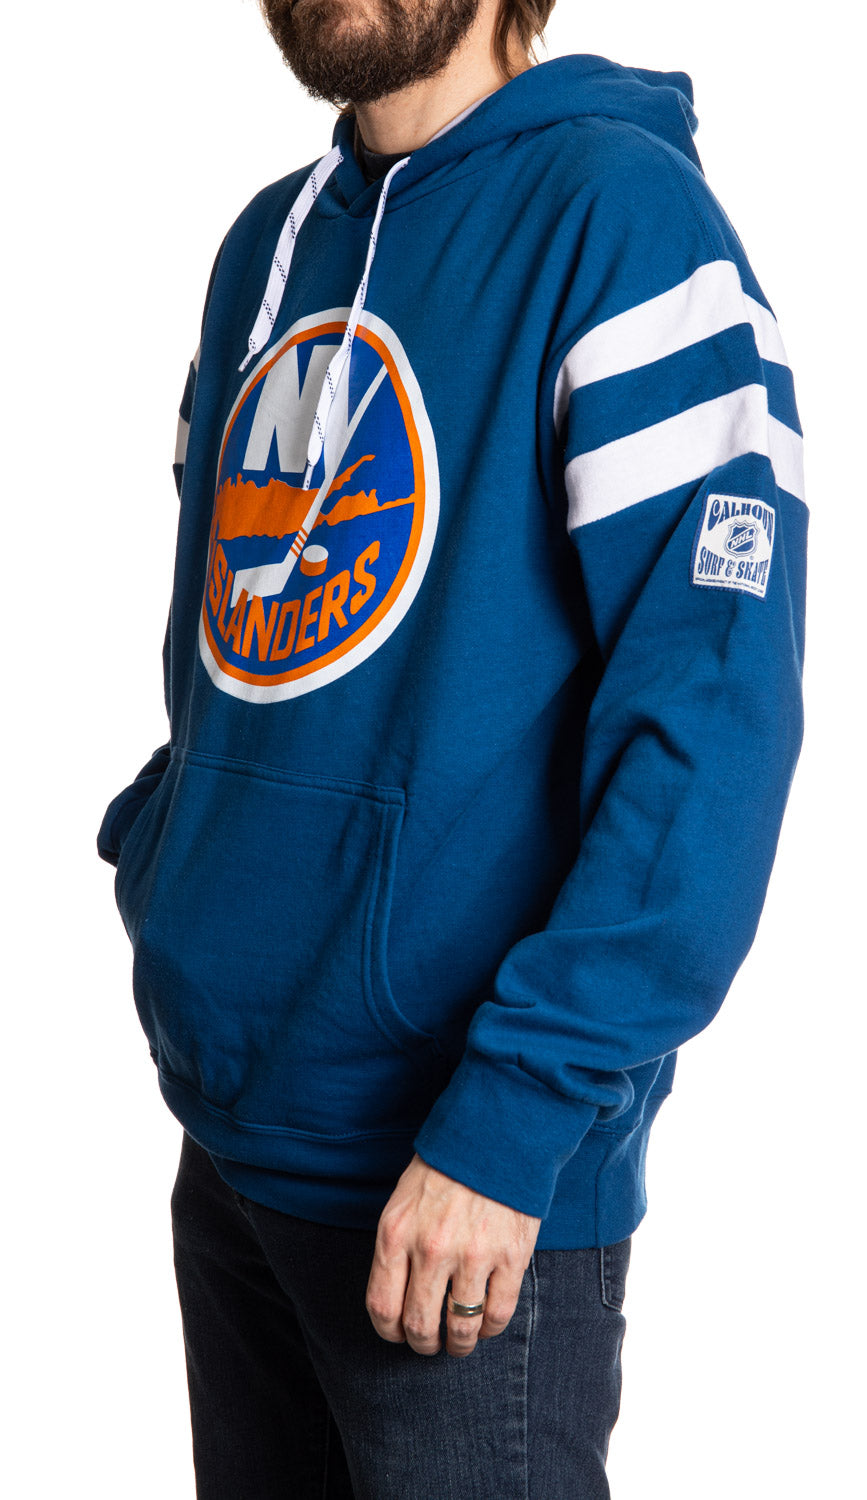 New York Islanders Varsity Retro Style Hoodie